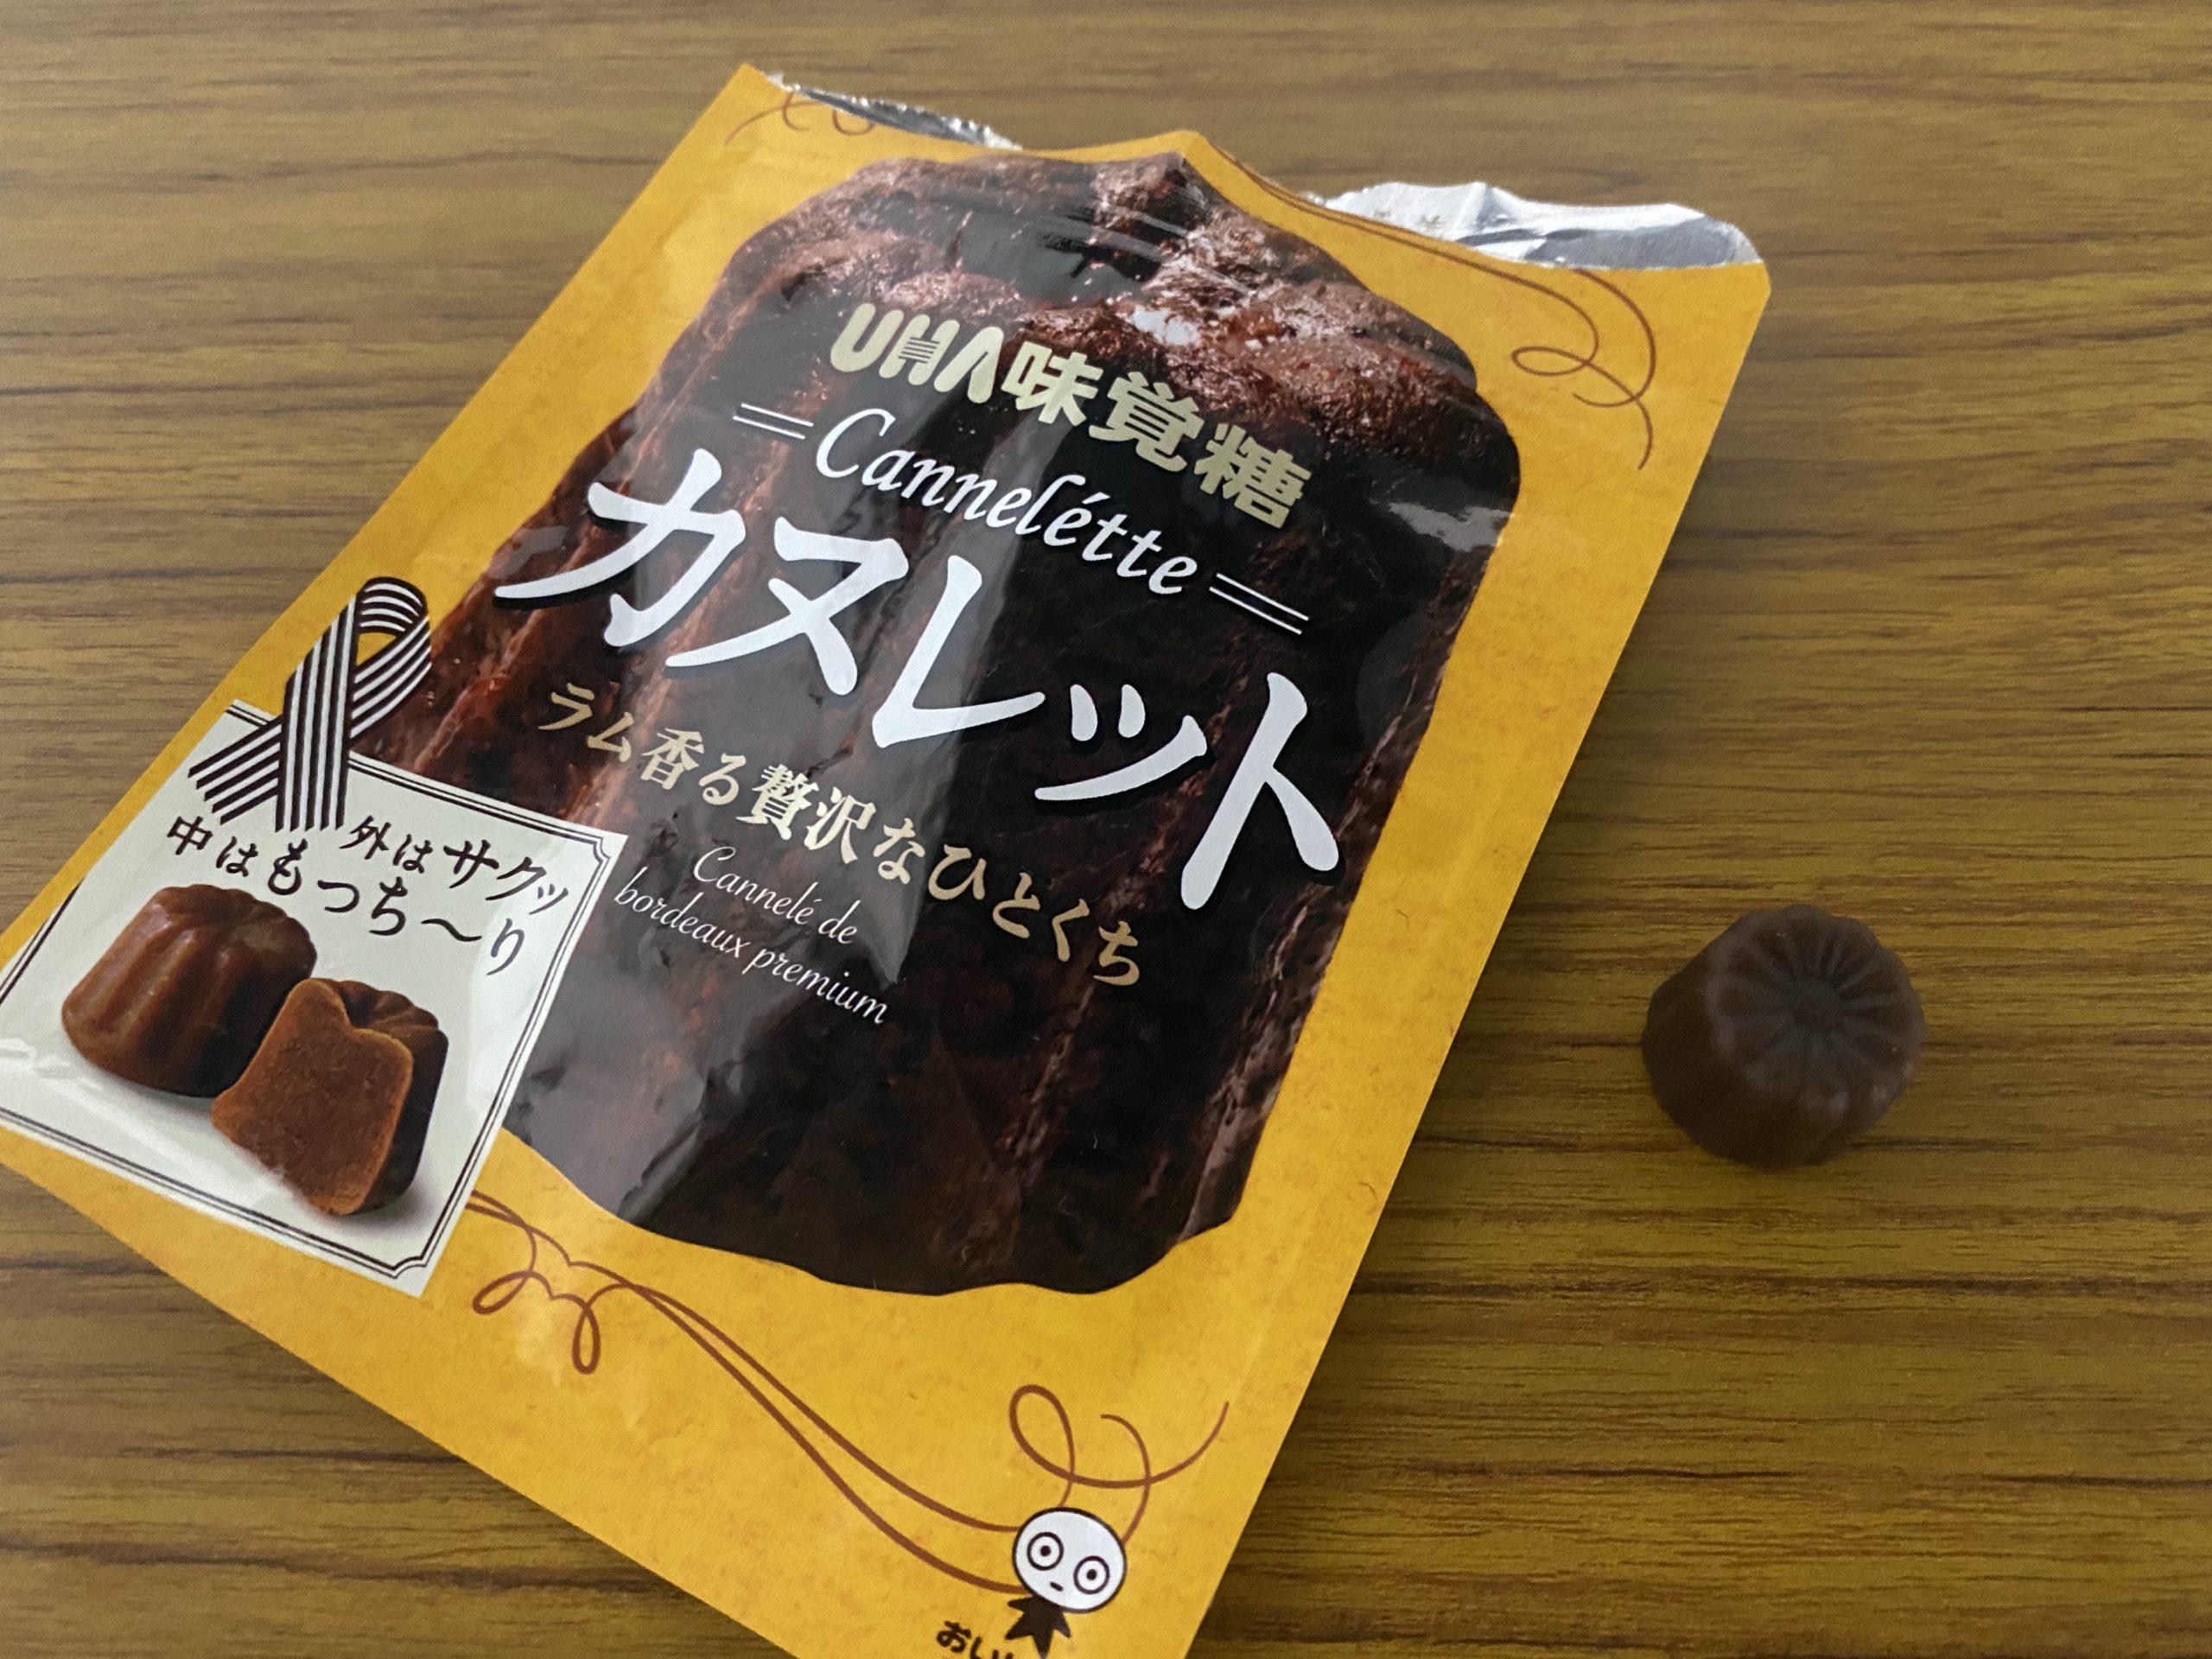 738円 スーパーセール期間限定 UHA味覚糖 カヌレット 40g×10個